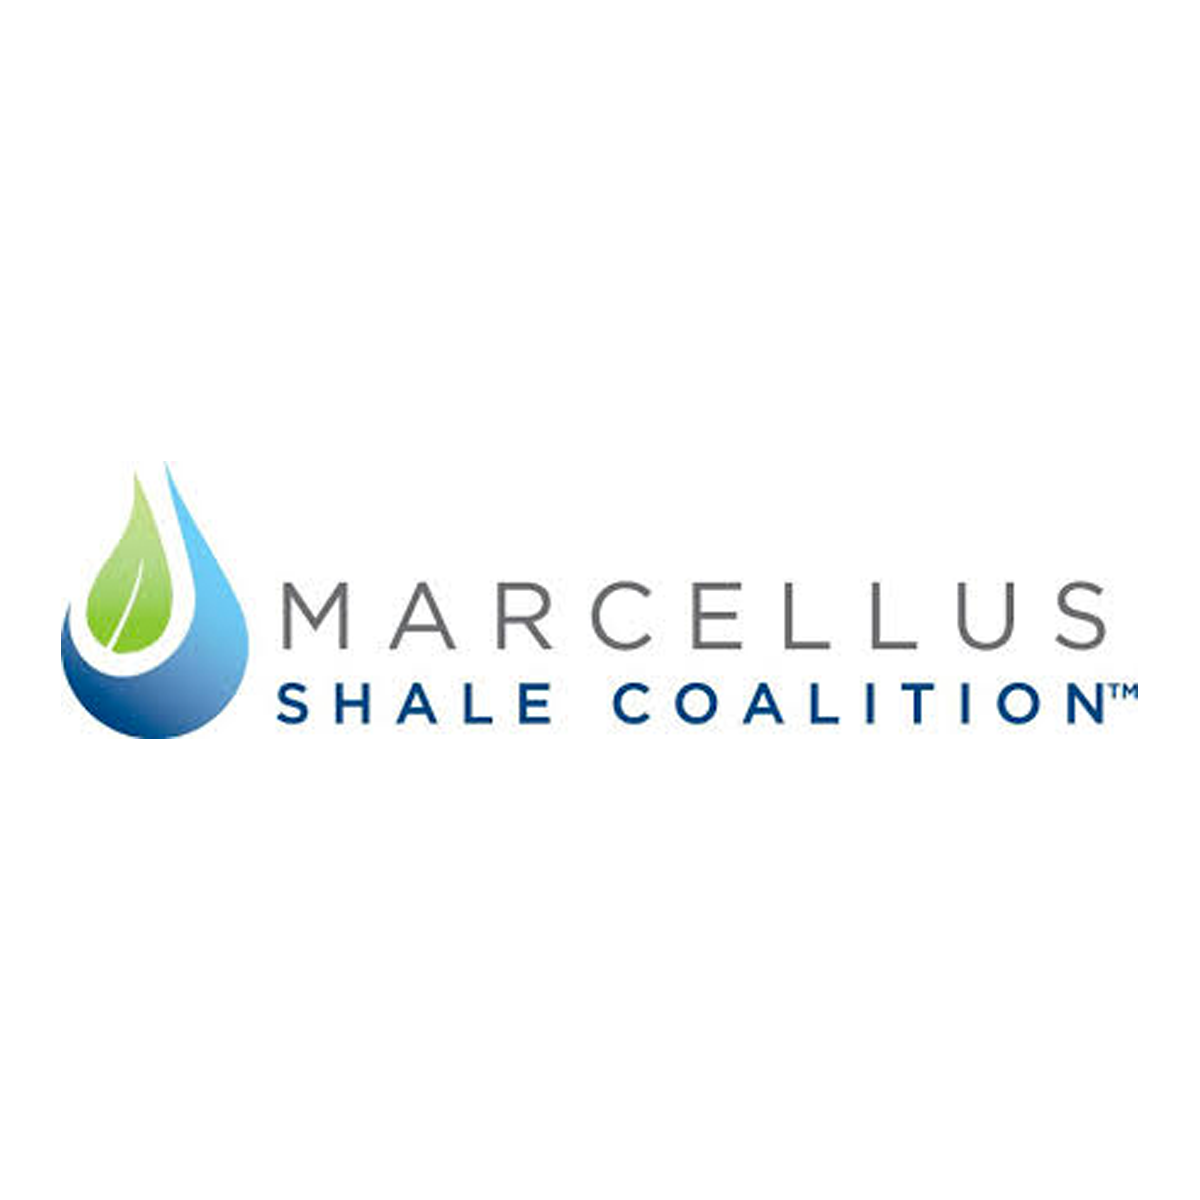  Marcellus Shale Coalition logo 